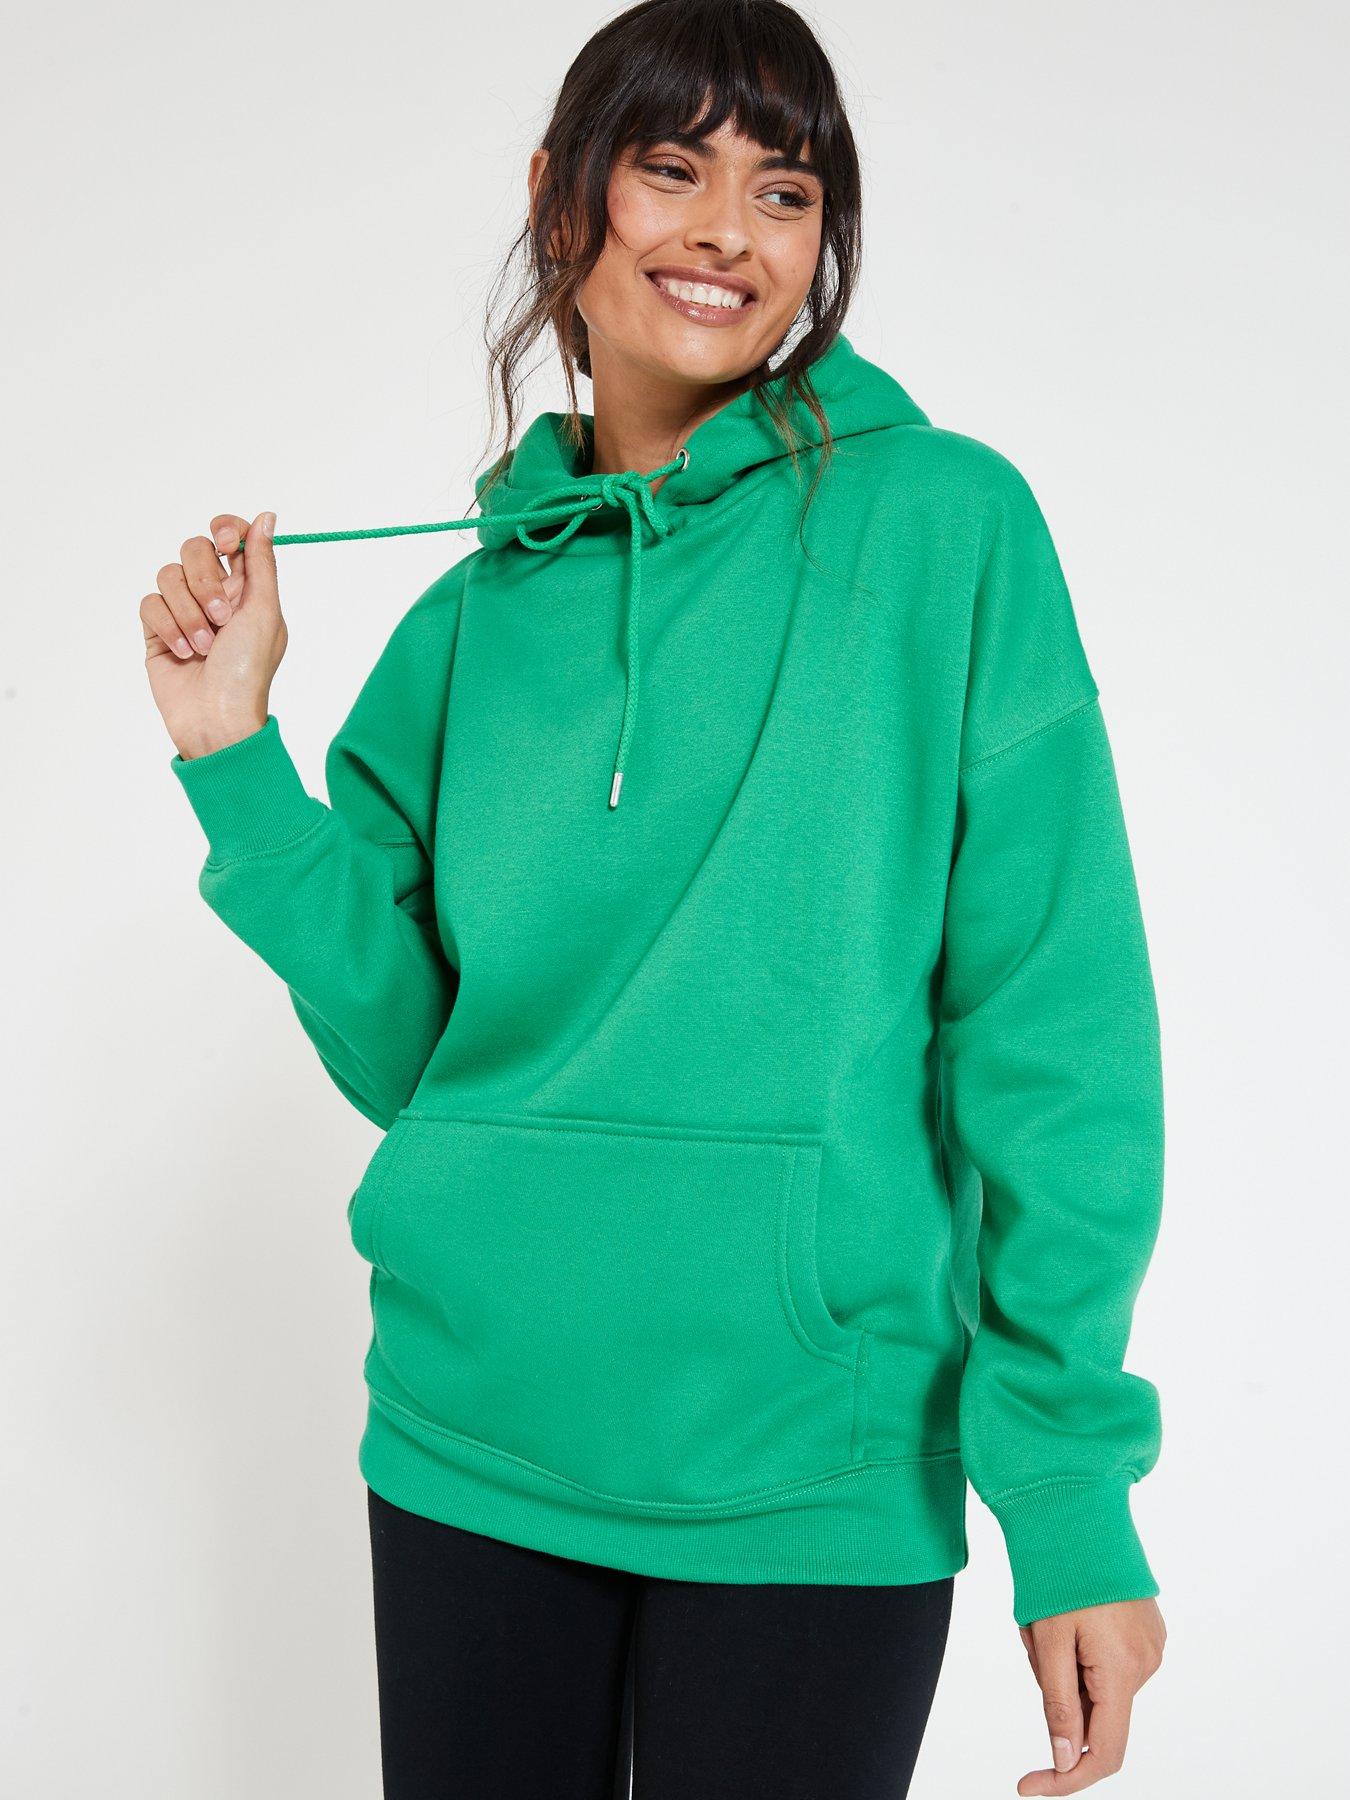 Green Tex sweatshirt discount 92% KIDS FASHION Jumpers & Sweatshirts Fleece 